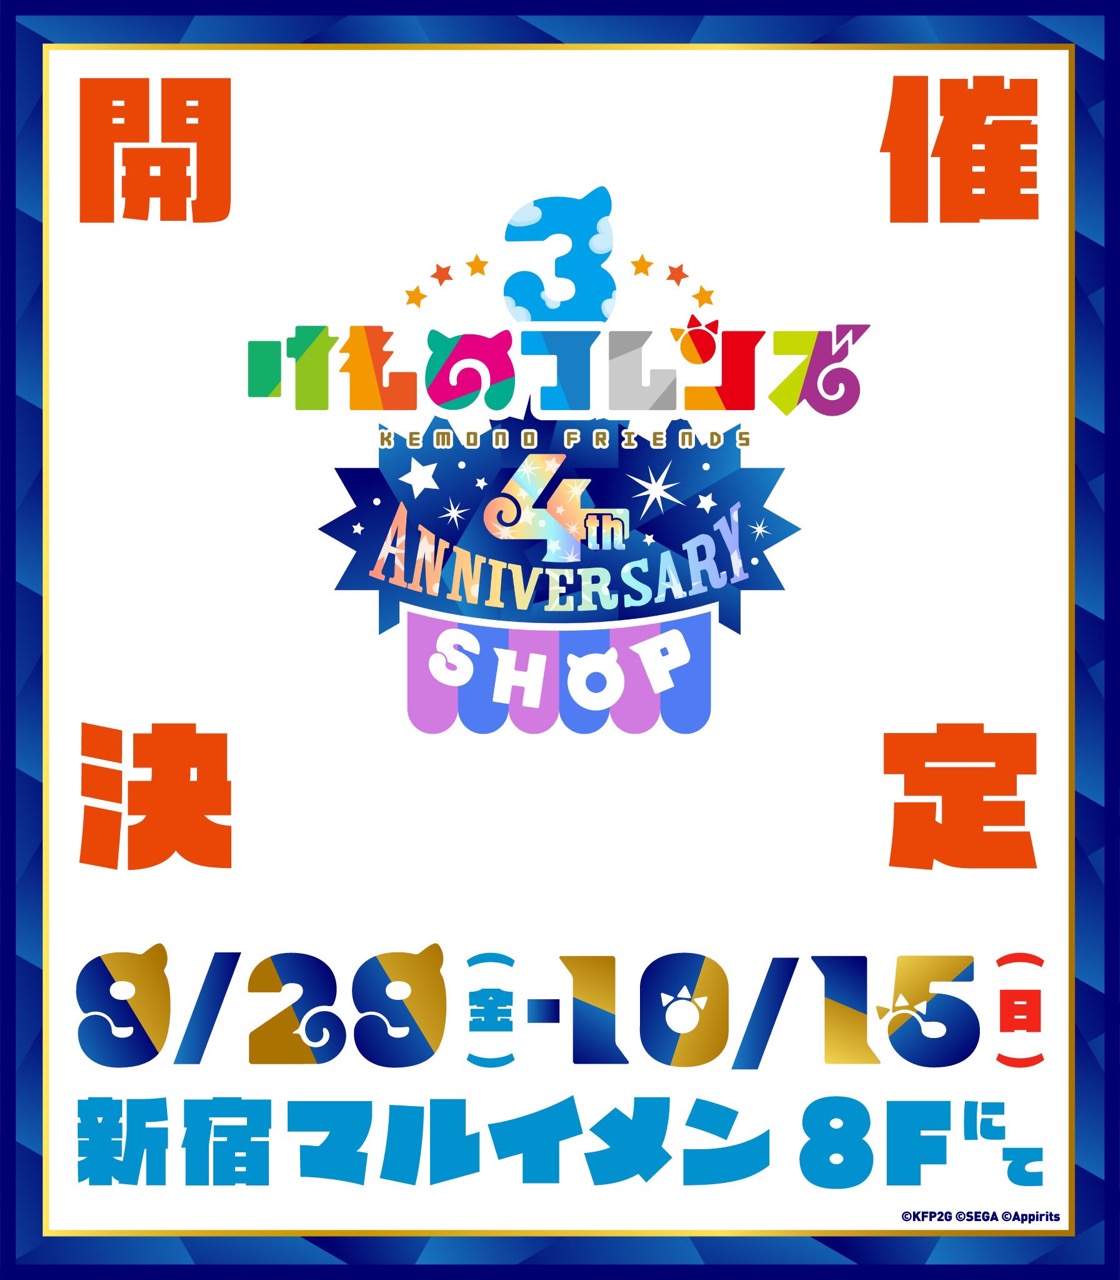 けものフレンズ3 4周年記念ストア in 新宿マルイメン 9月29日より開催!